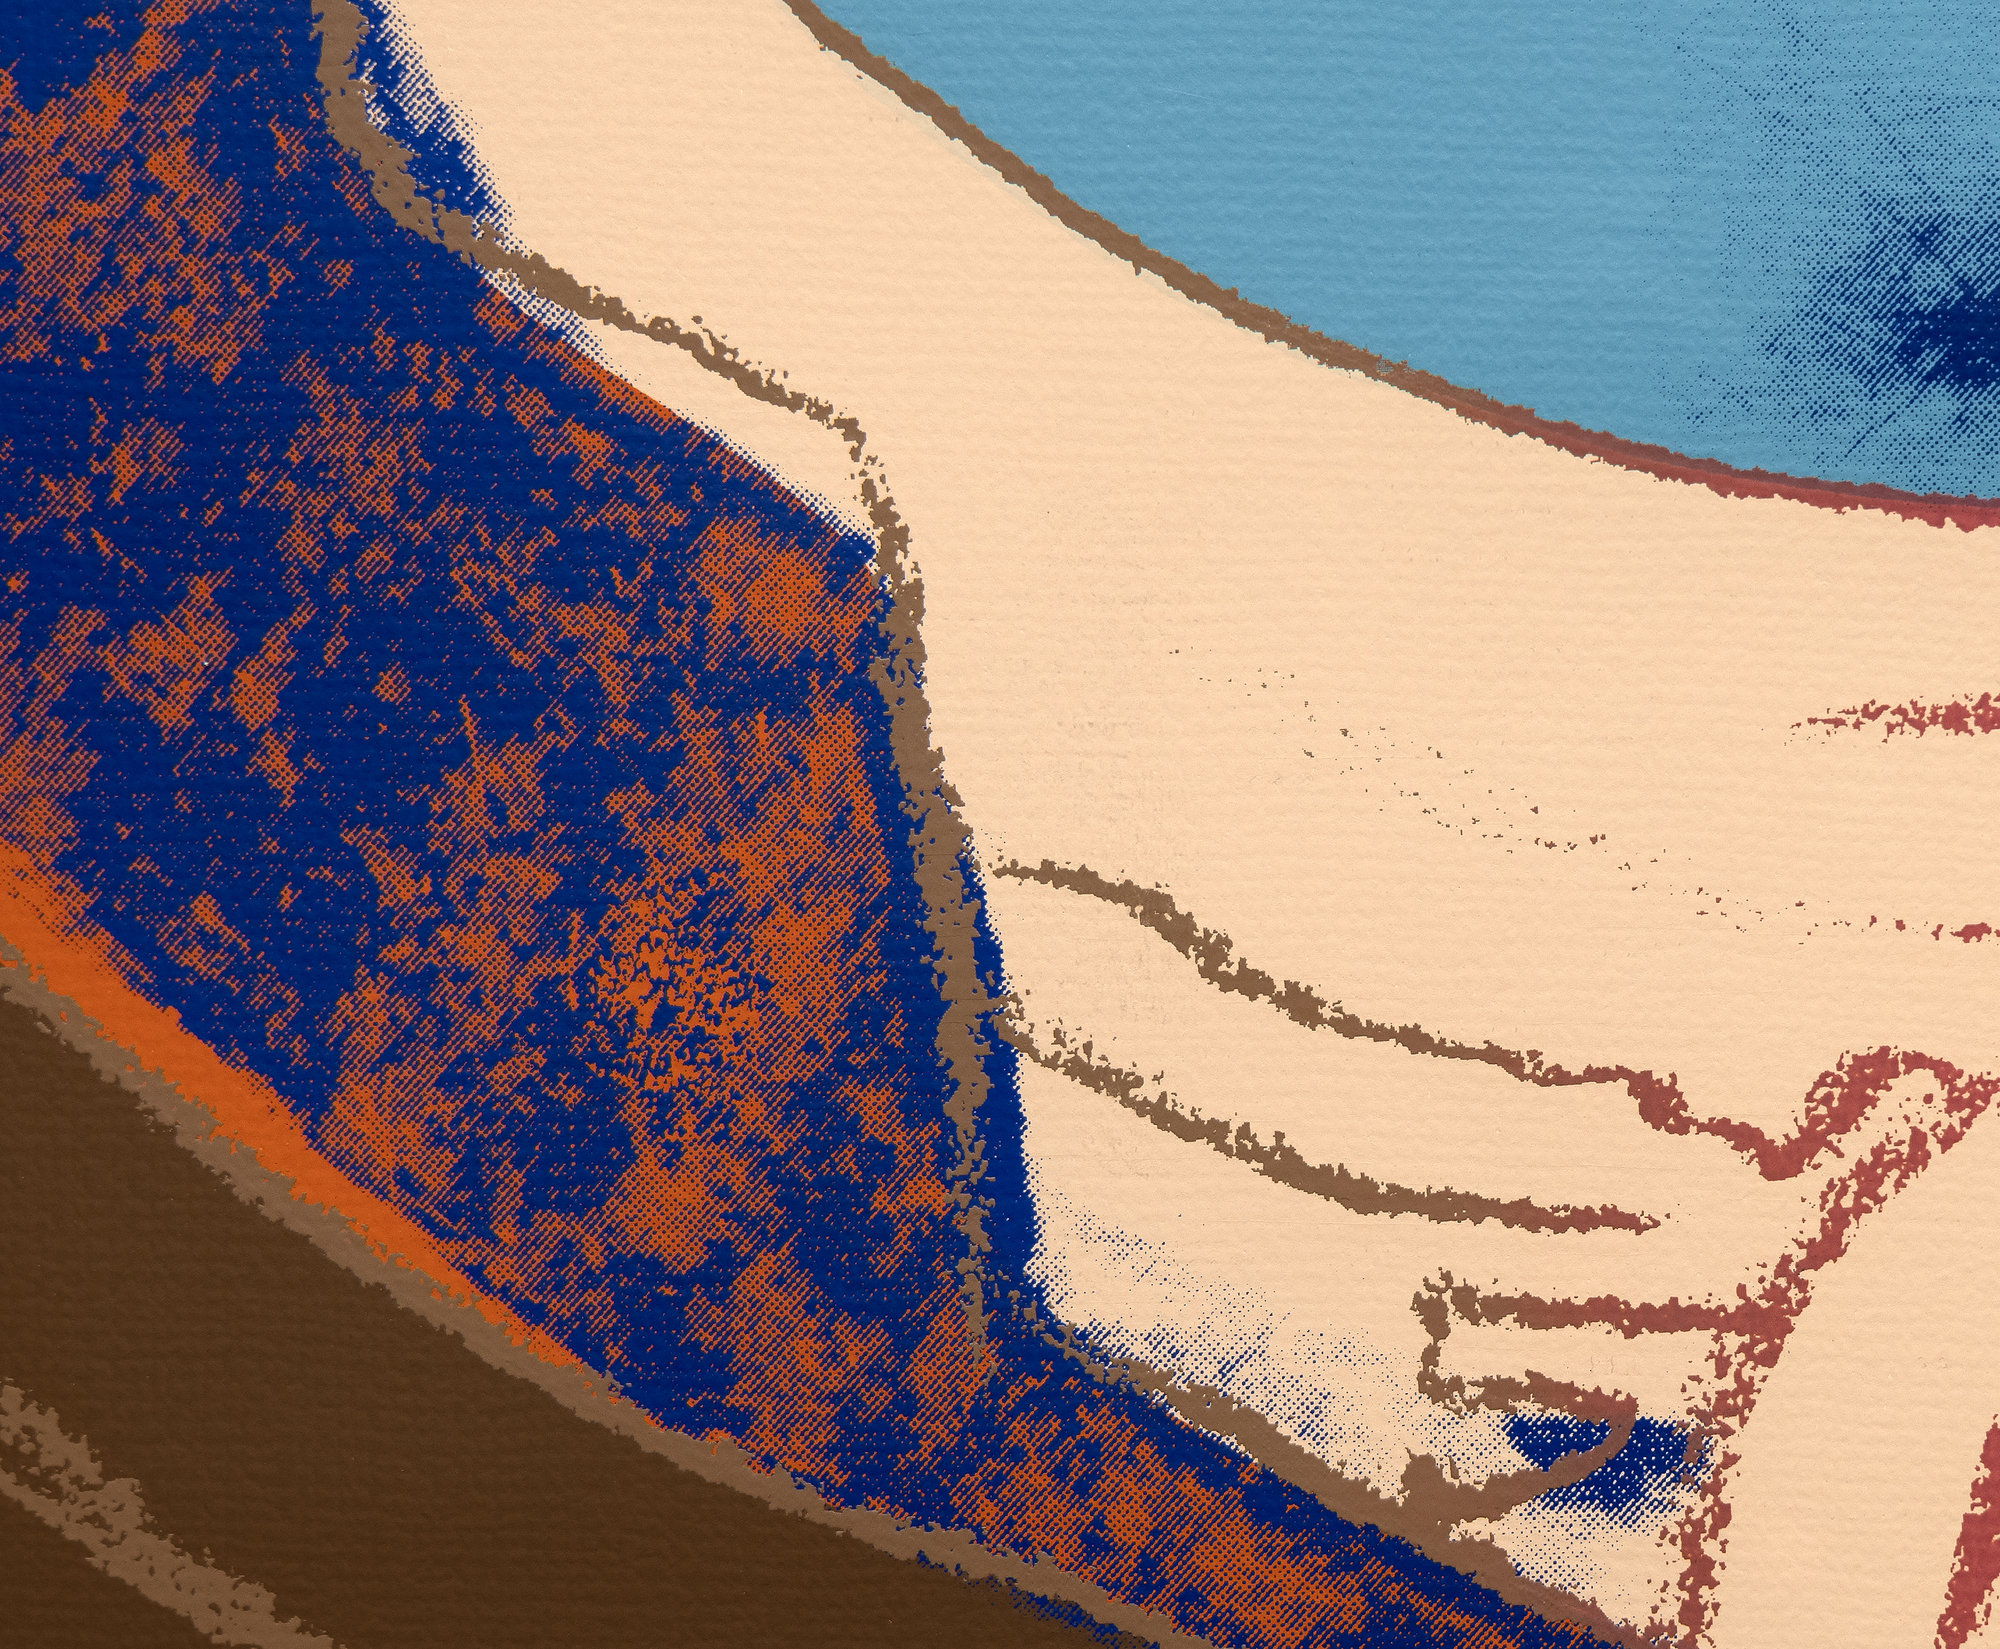 آندي وارهول - جوته - بالشاشة الحريرية بالألوان - 38 × 38 بوصة.